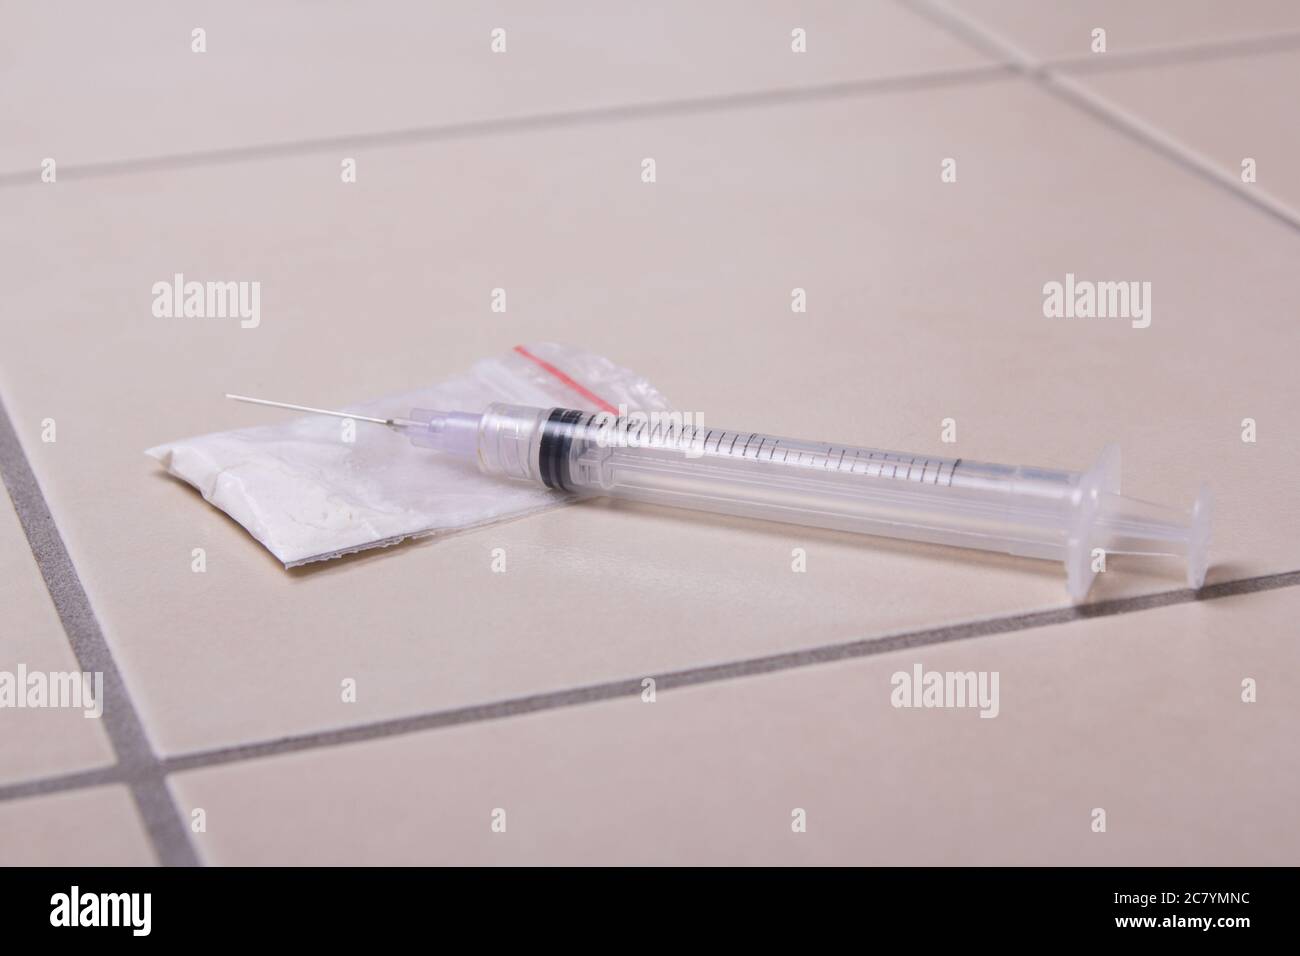 drug syringe and heroin powder on tiled floor Stock Photo